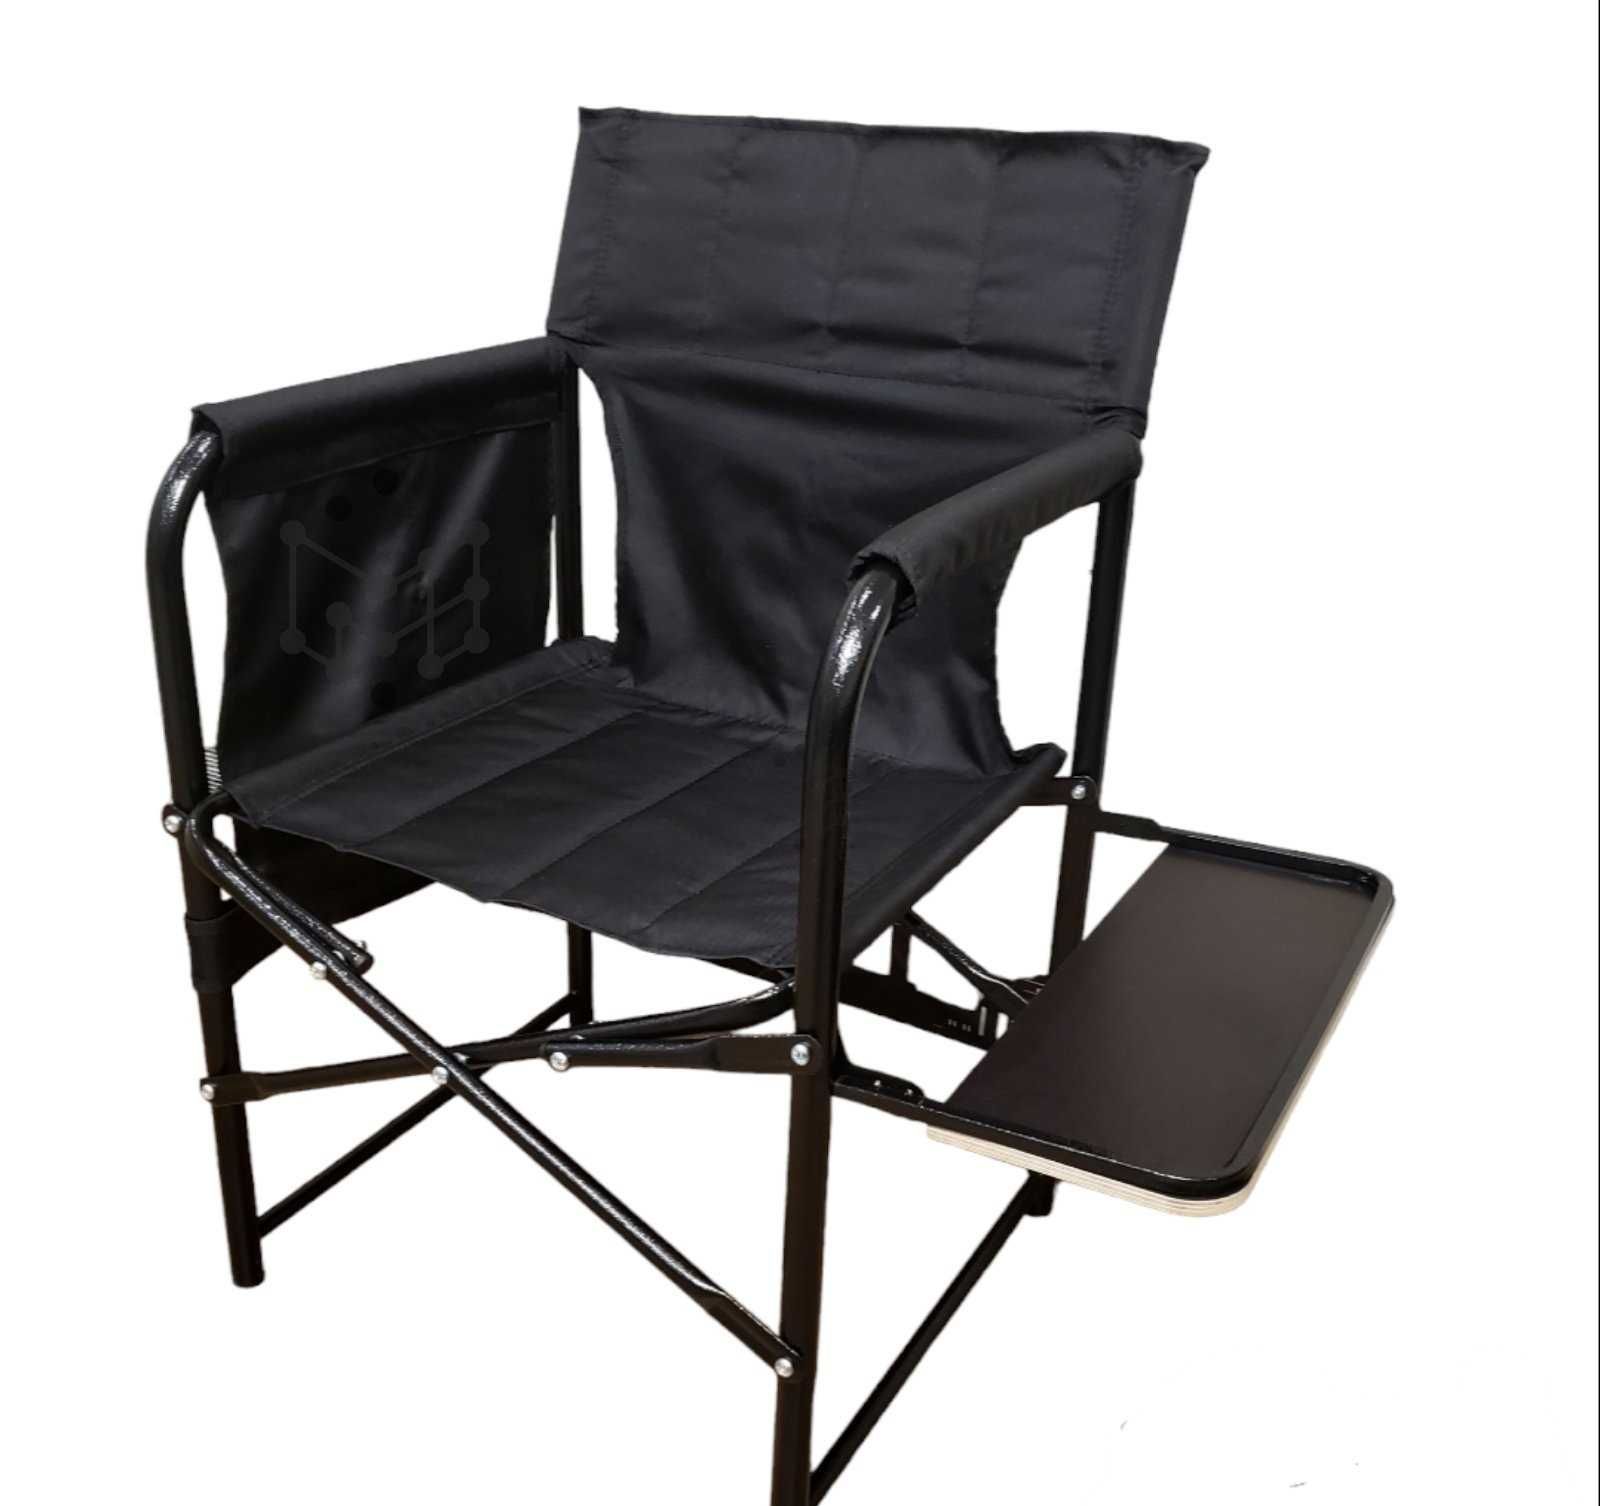 Оригинальное кресло Комфорт с полочкой, для дачи, рыбалки, отдыха